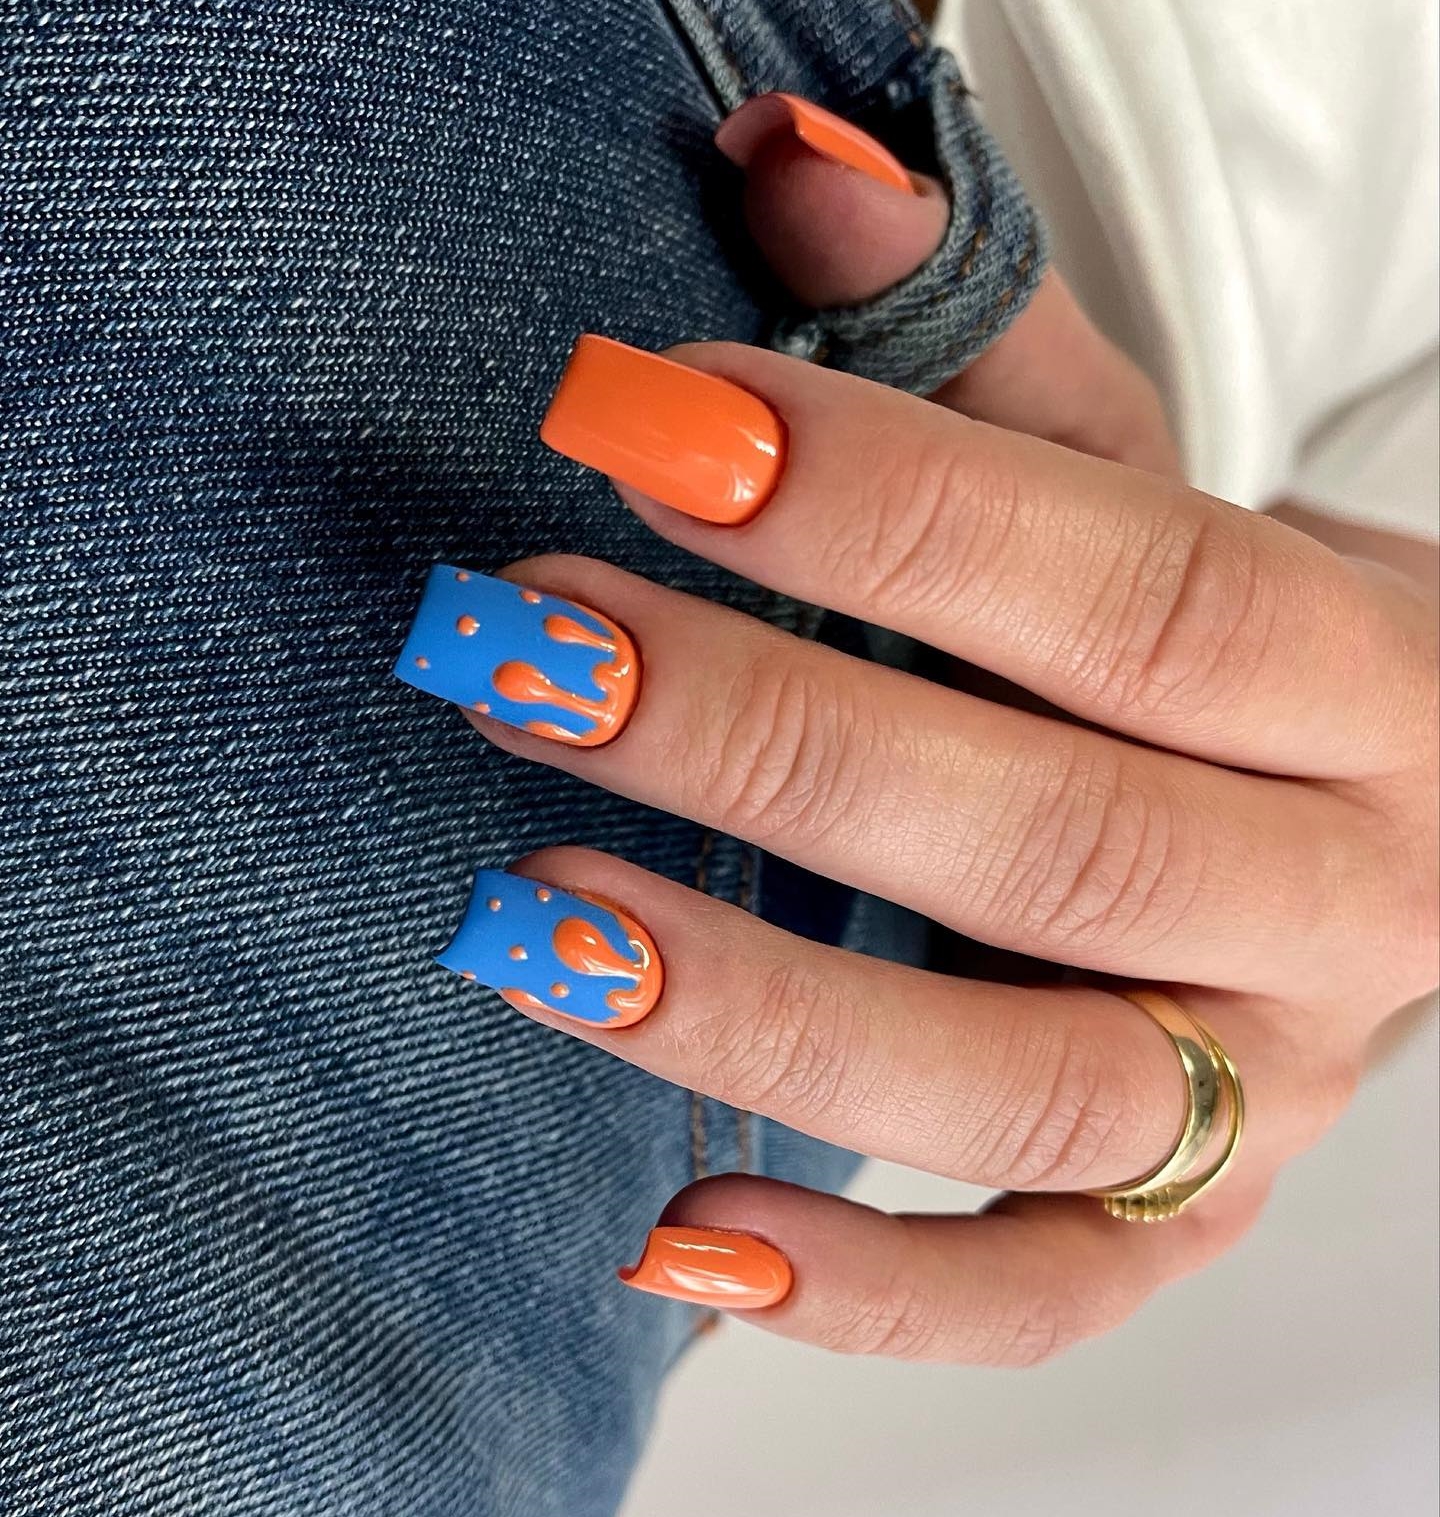 Vierkante oranje en blauwe nagels